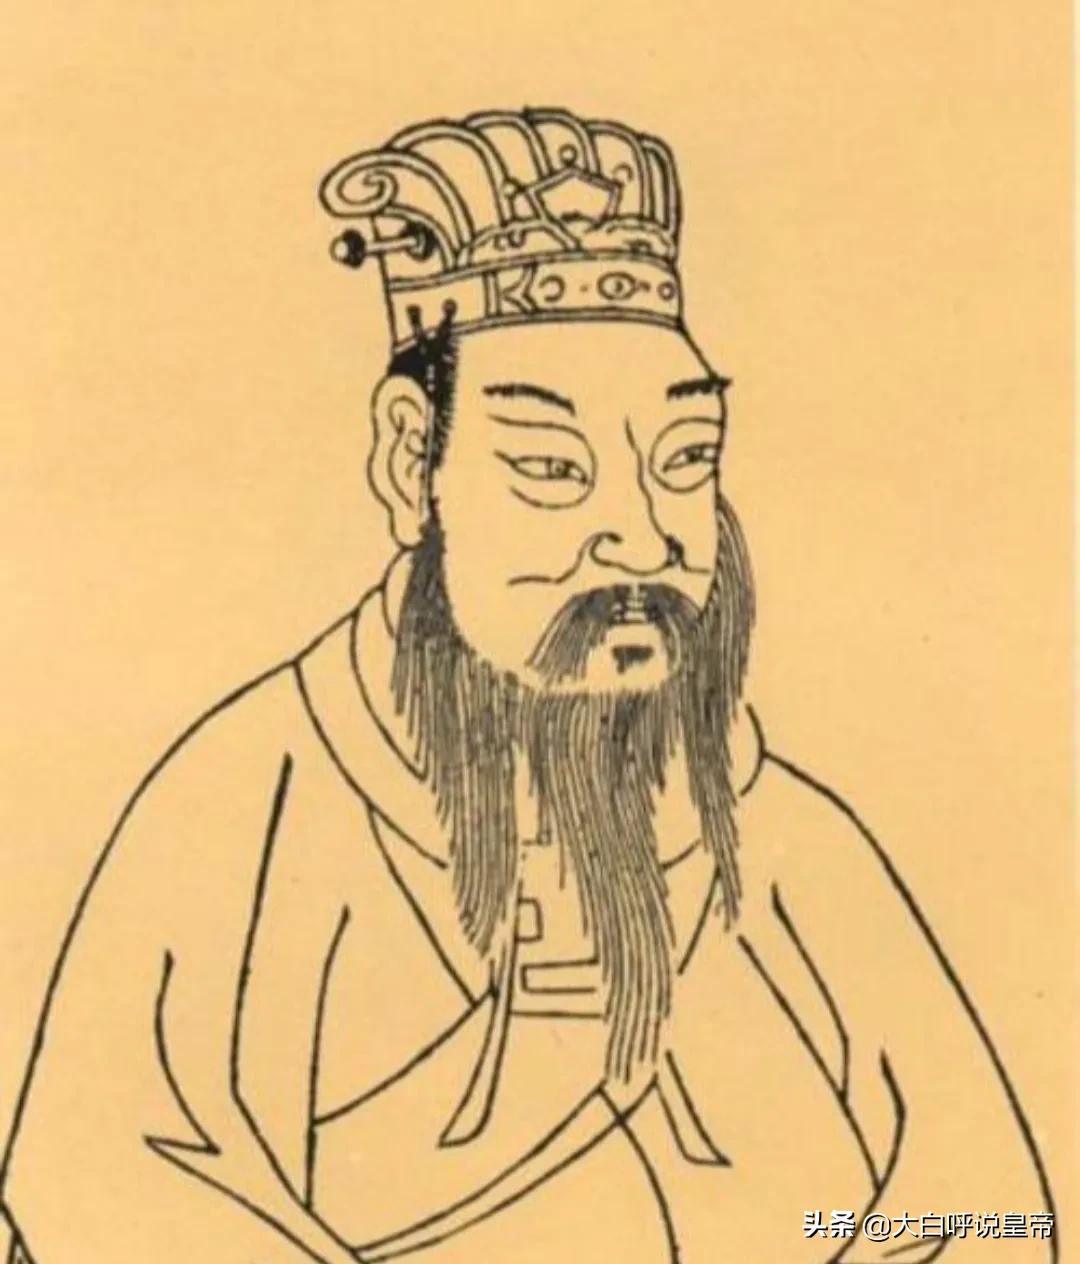 司马绍画像第九位从山东走出来的皇帝是大齐皇帝黄巢